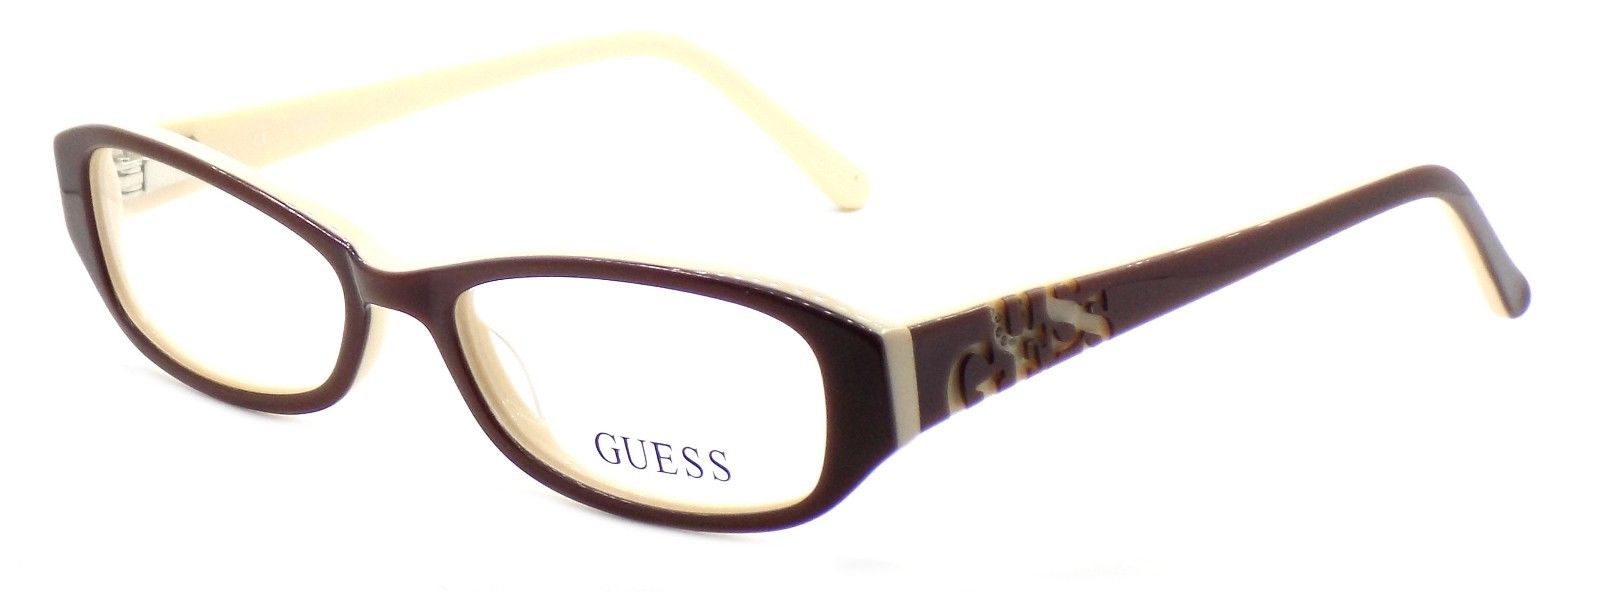 1-GUESS GU9126 BRN Women's Eyeglasses Frames 49-16-135 Brown / Cream + CASE-715583033573-IKSpecs